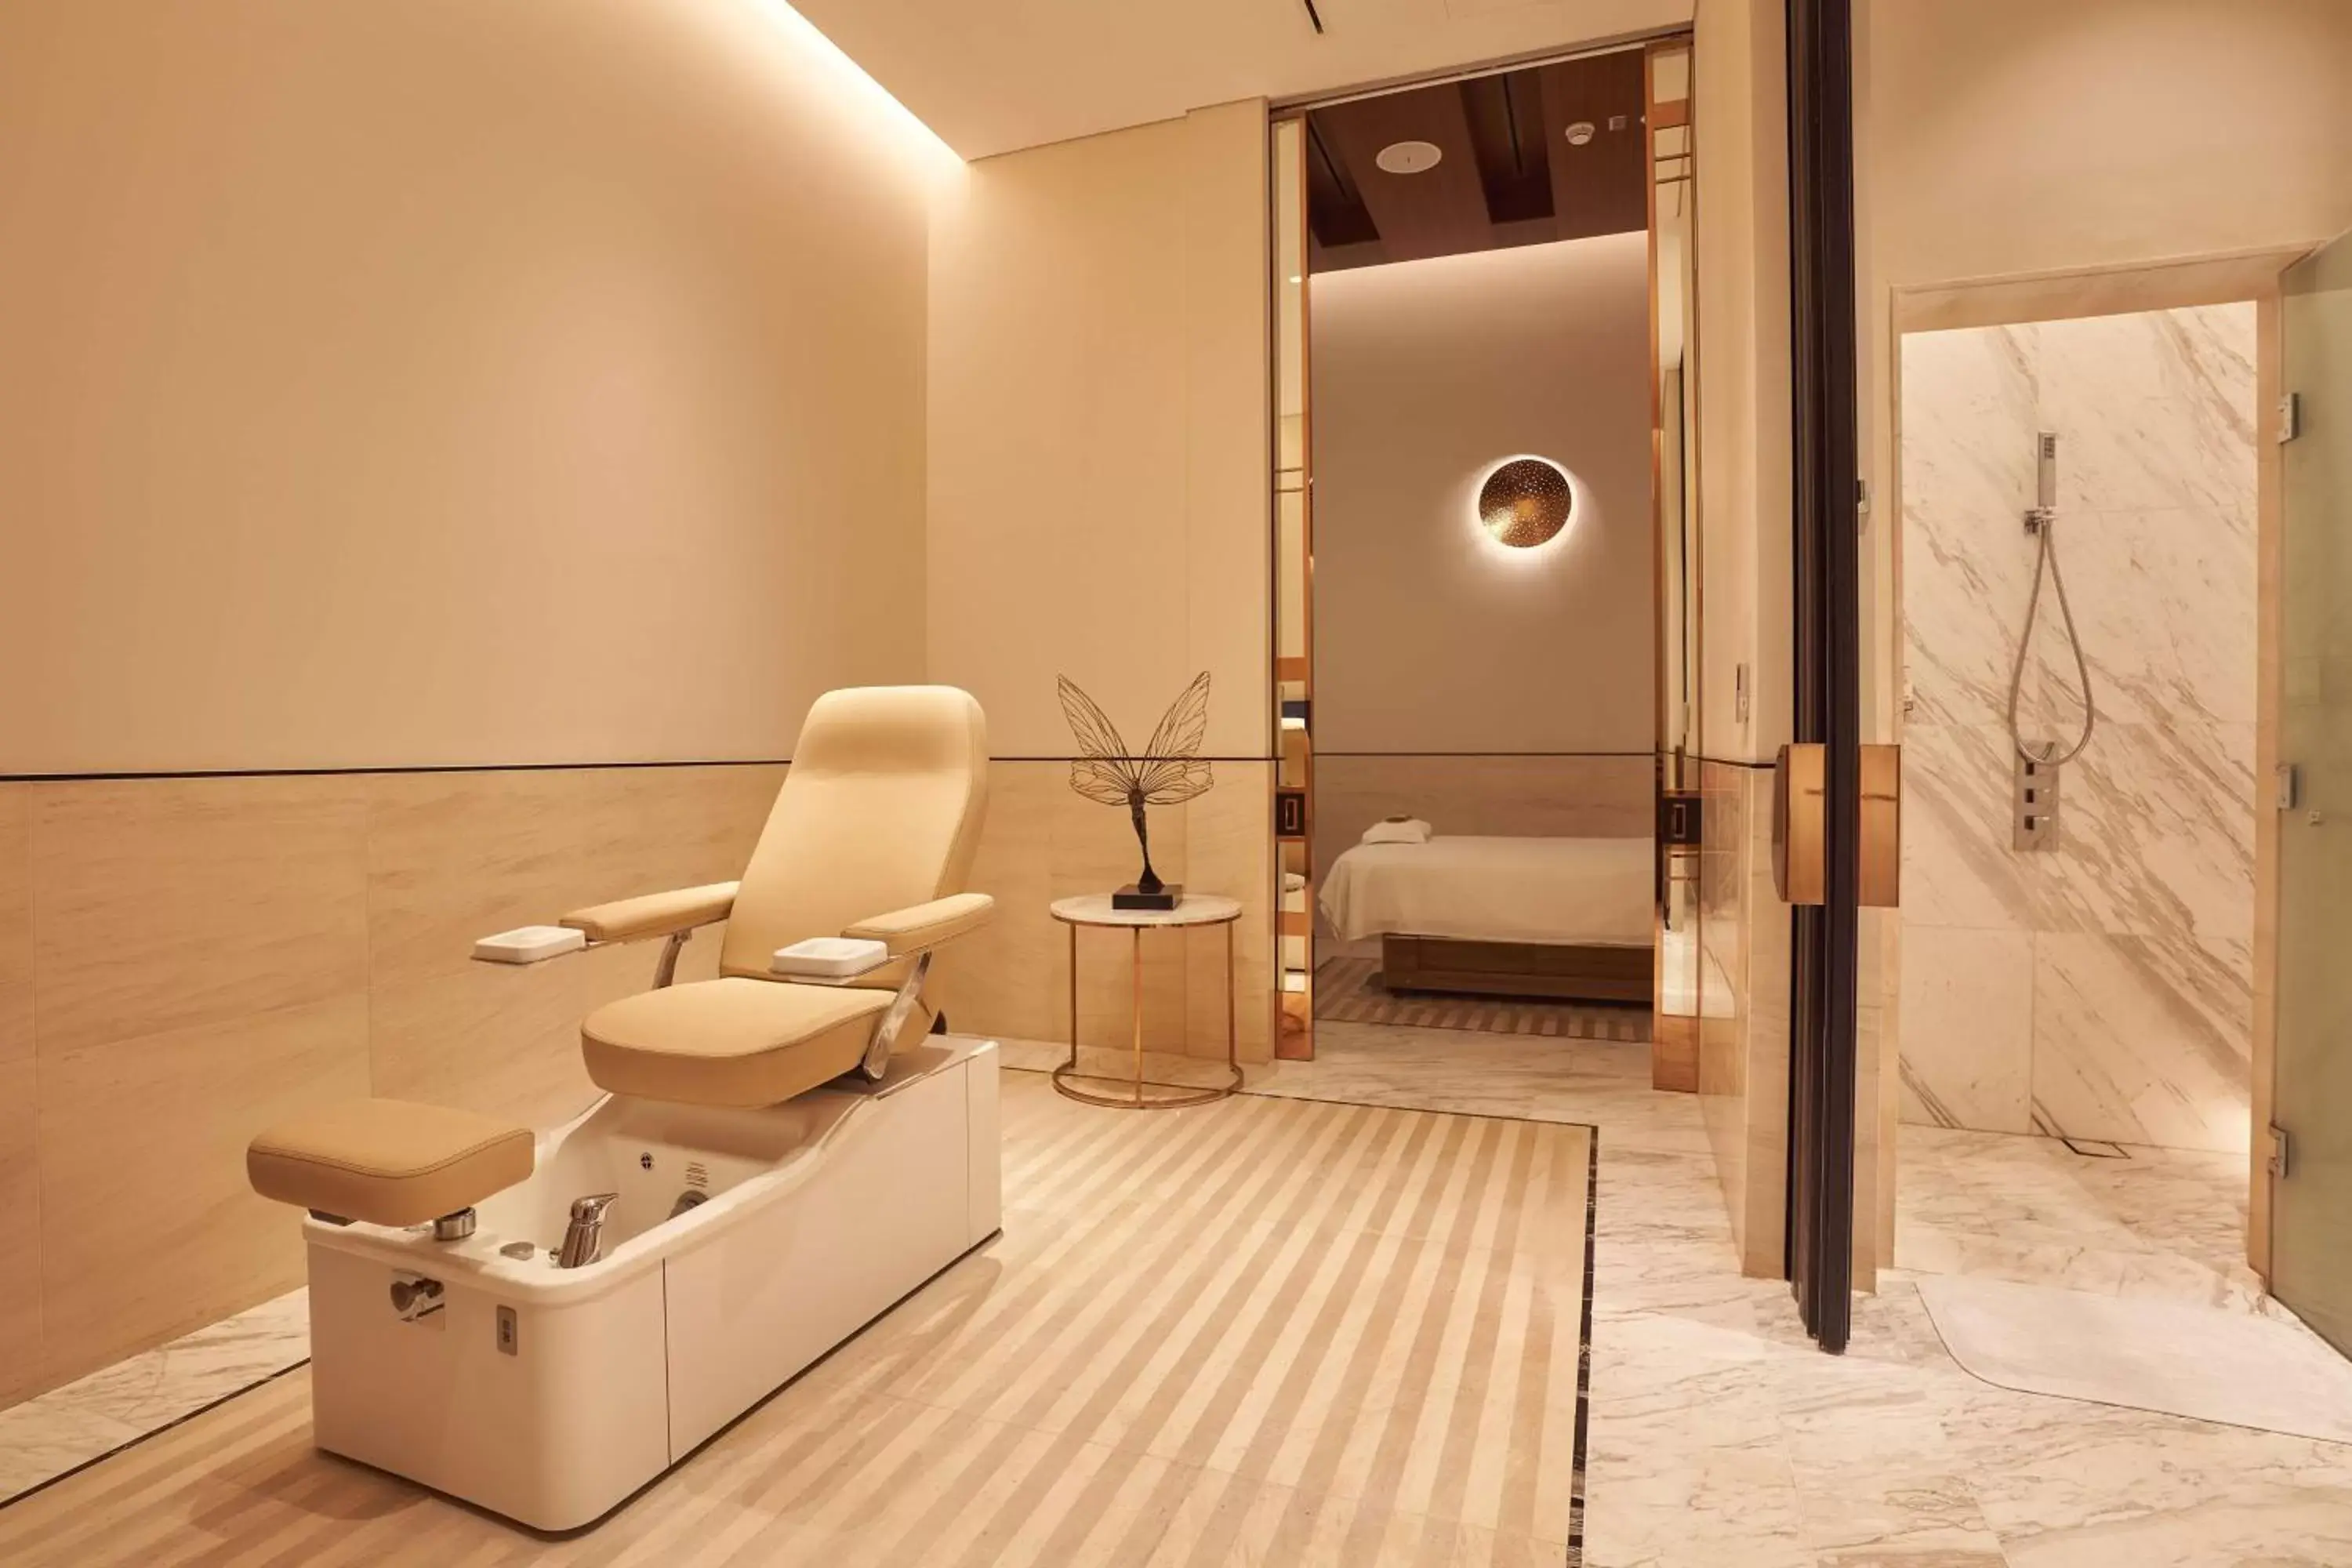 Spa and wellness centre/facilities, Bathroom in Waldorf Astoria Dubai International Financial Centre